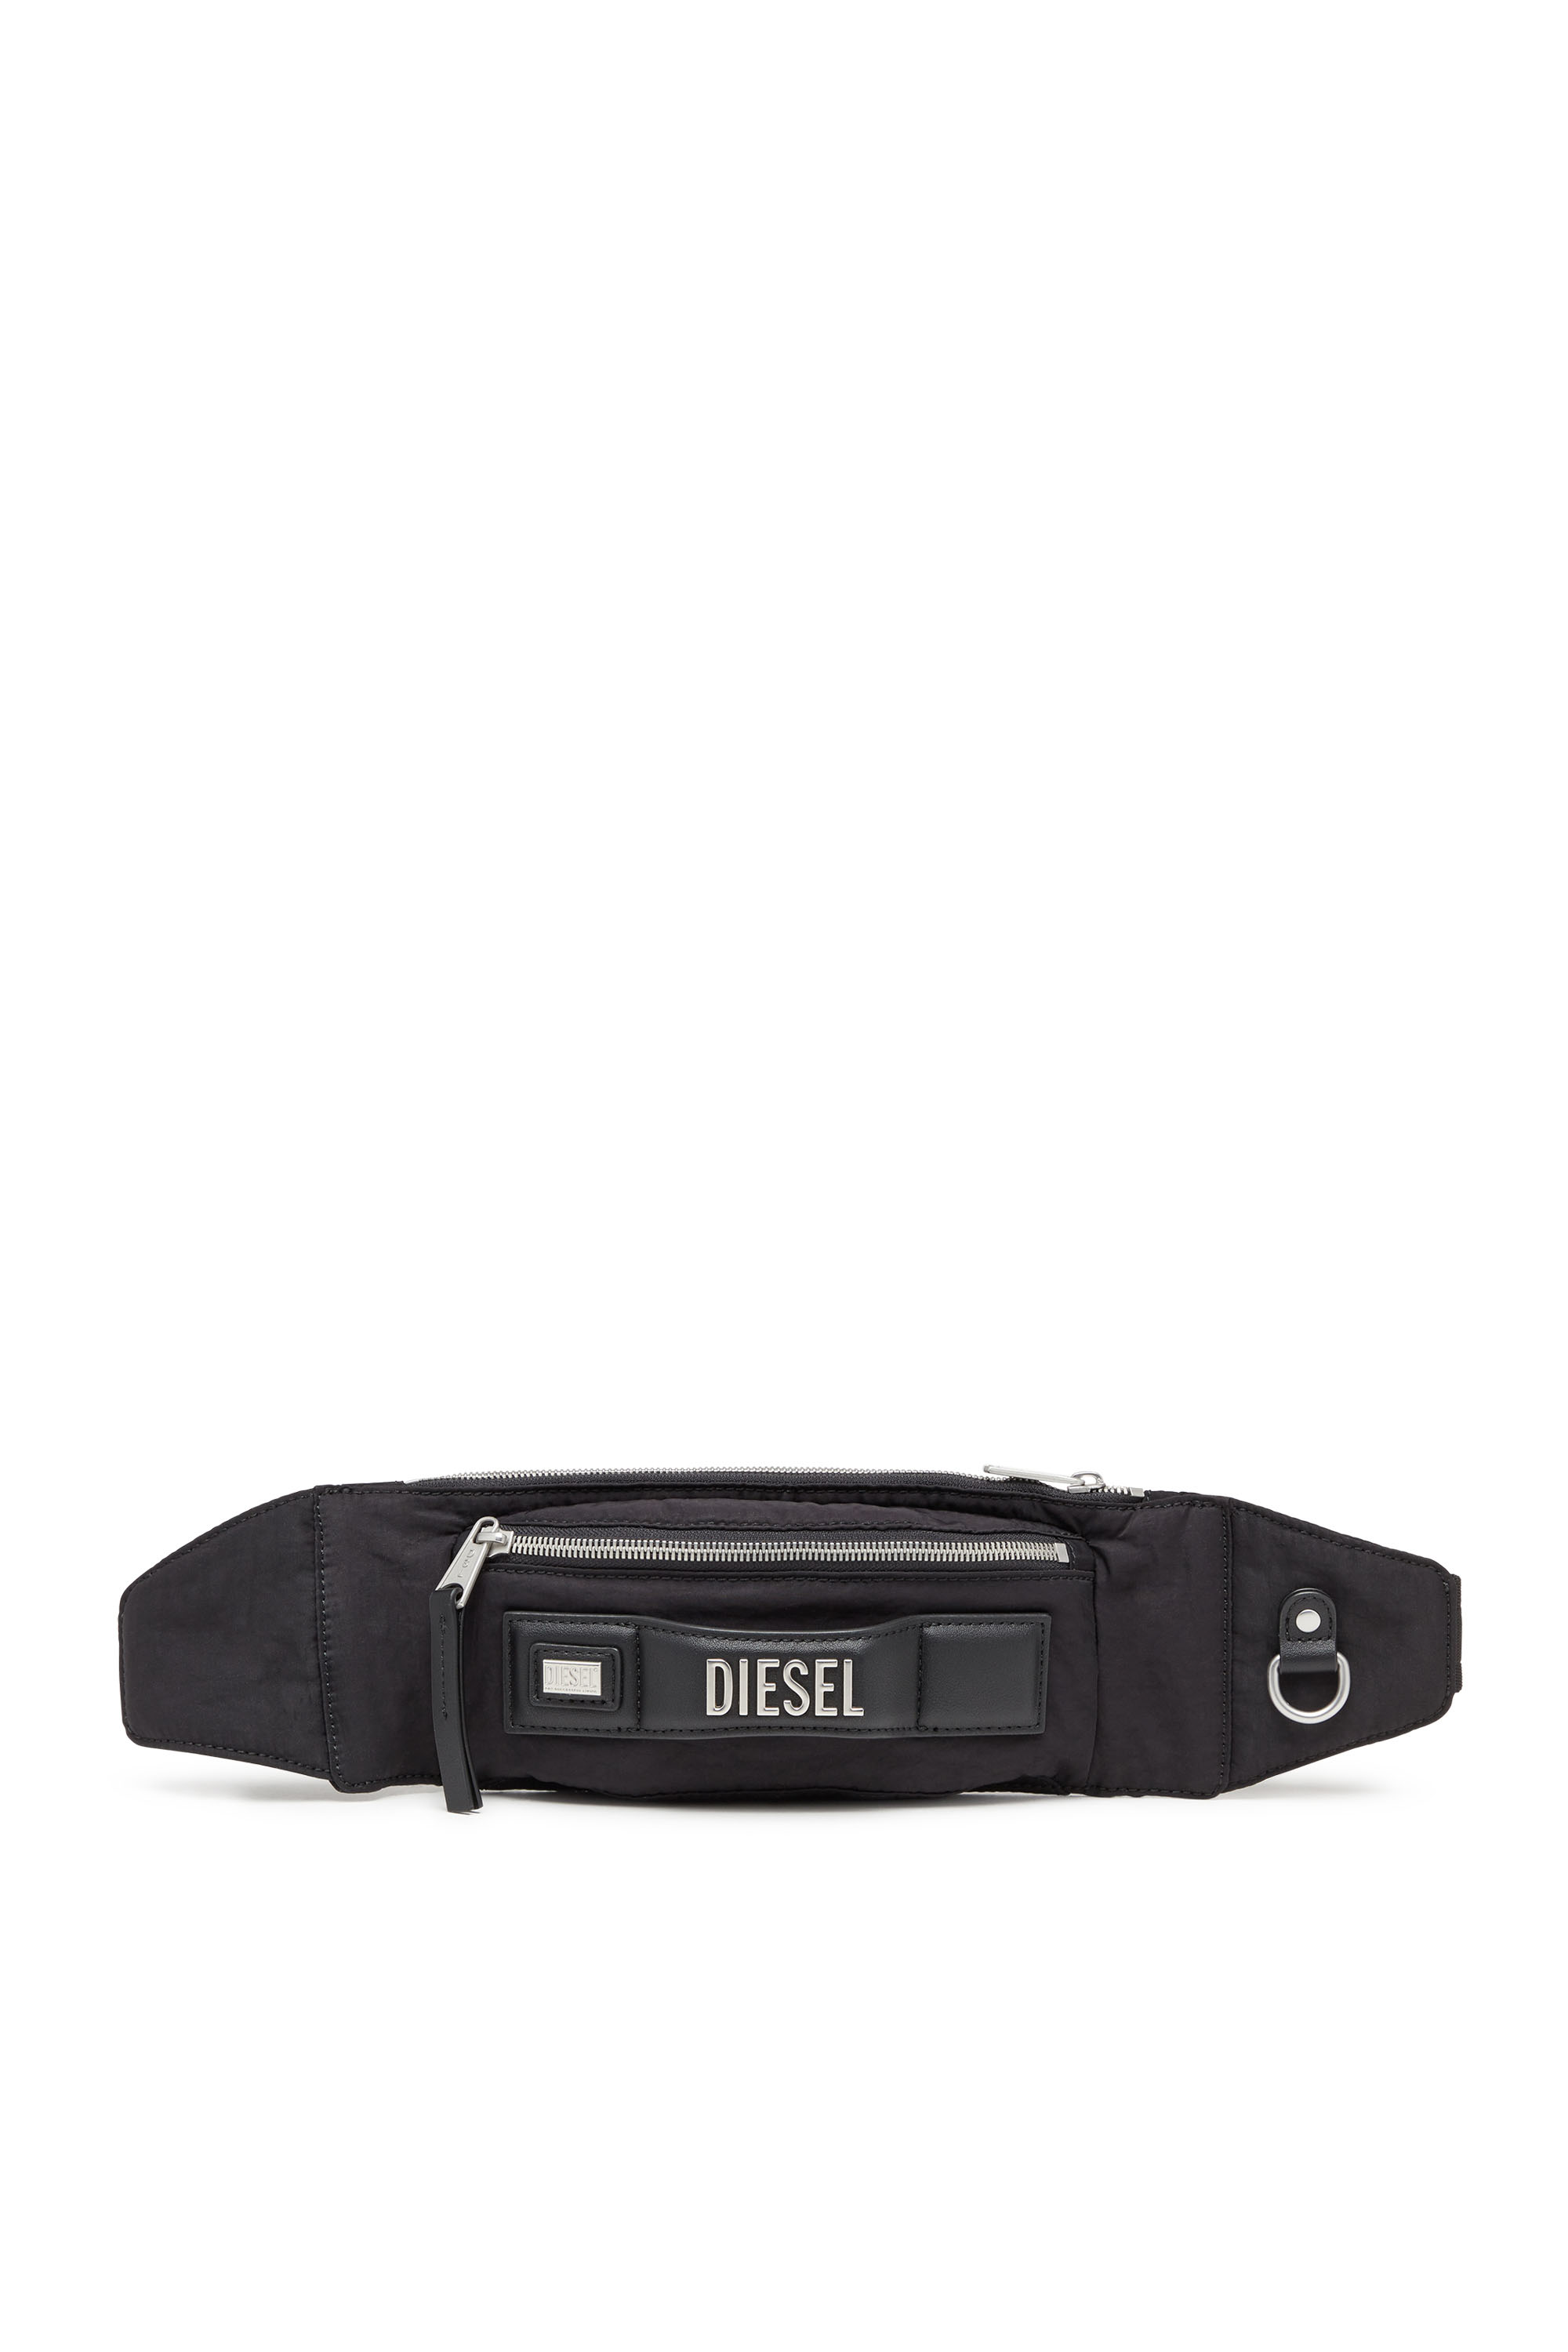 Diesel - Logos Belt Bag - Belt bag in nylon riciclato - Marsupi - Unisex - Nero